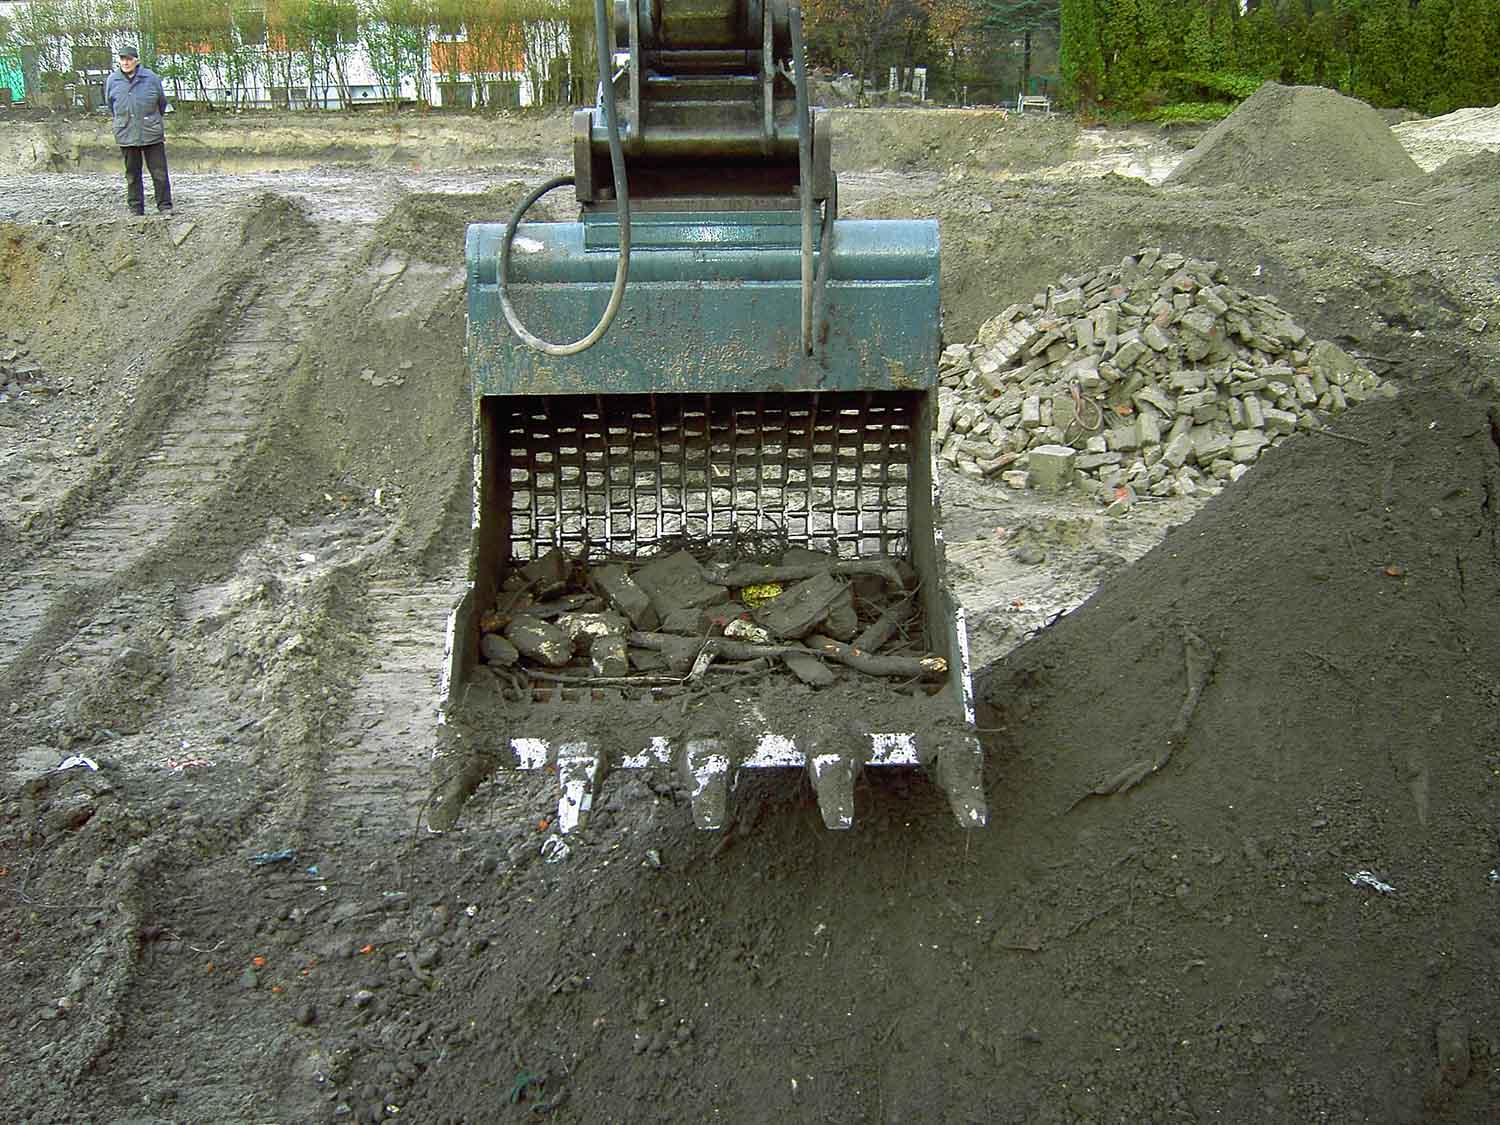 Dappen Werkzeug- und Maschinenbau | Dappen Sieblöffel in Anwendung | Der Furukawa 735 LS mit Dappen Sieblöffel „B34-1200-60S“ siebt schuttdurchsetzten Boden